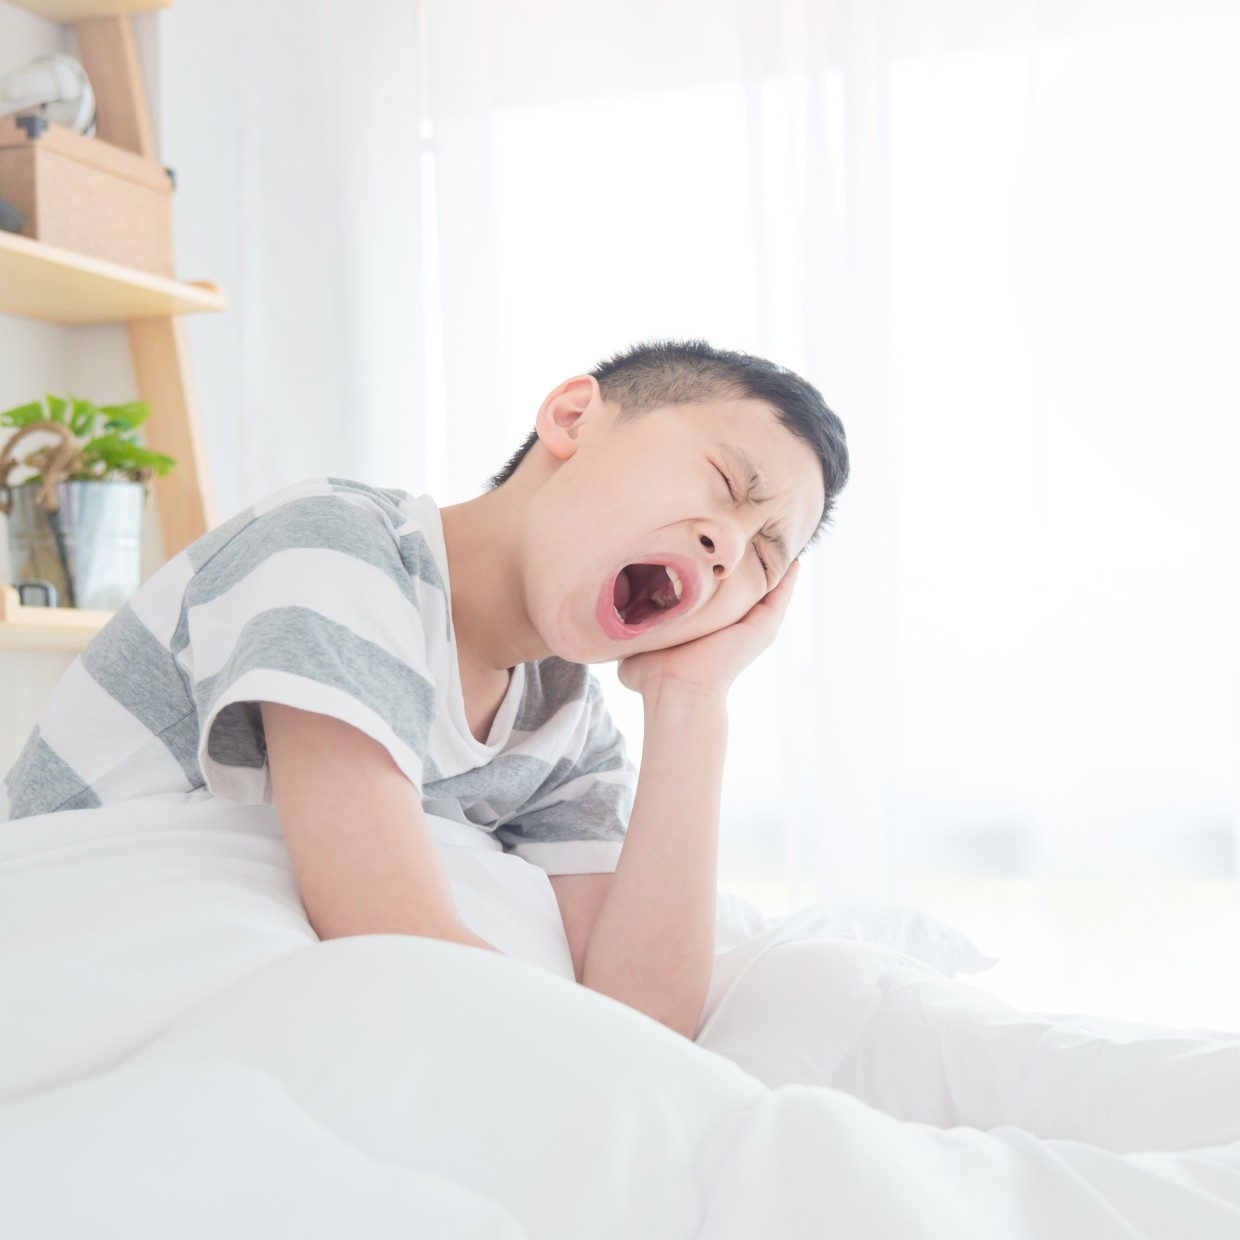  睡眠時間が短い子どもはストレスが増える？子どもの睡眠改善に必要な3つのこと 